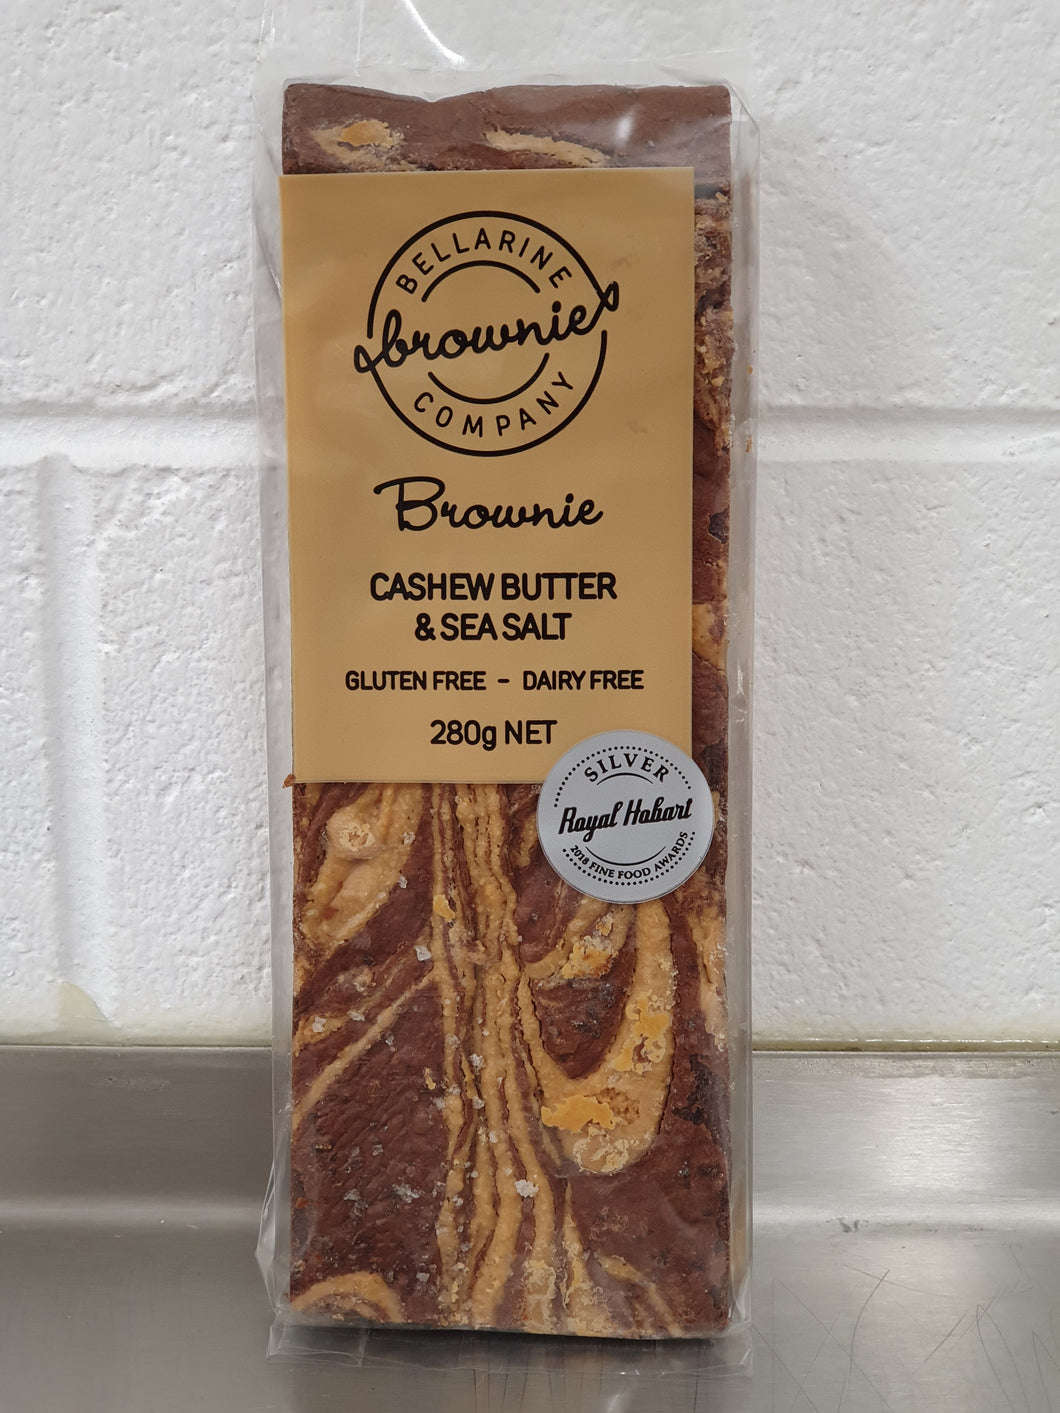 Cashew Butter Brownie, Bellarine Brownie Co 280g